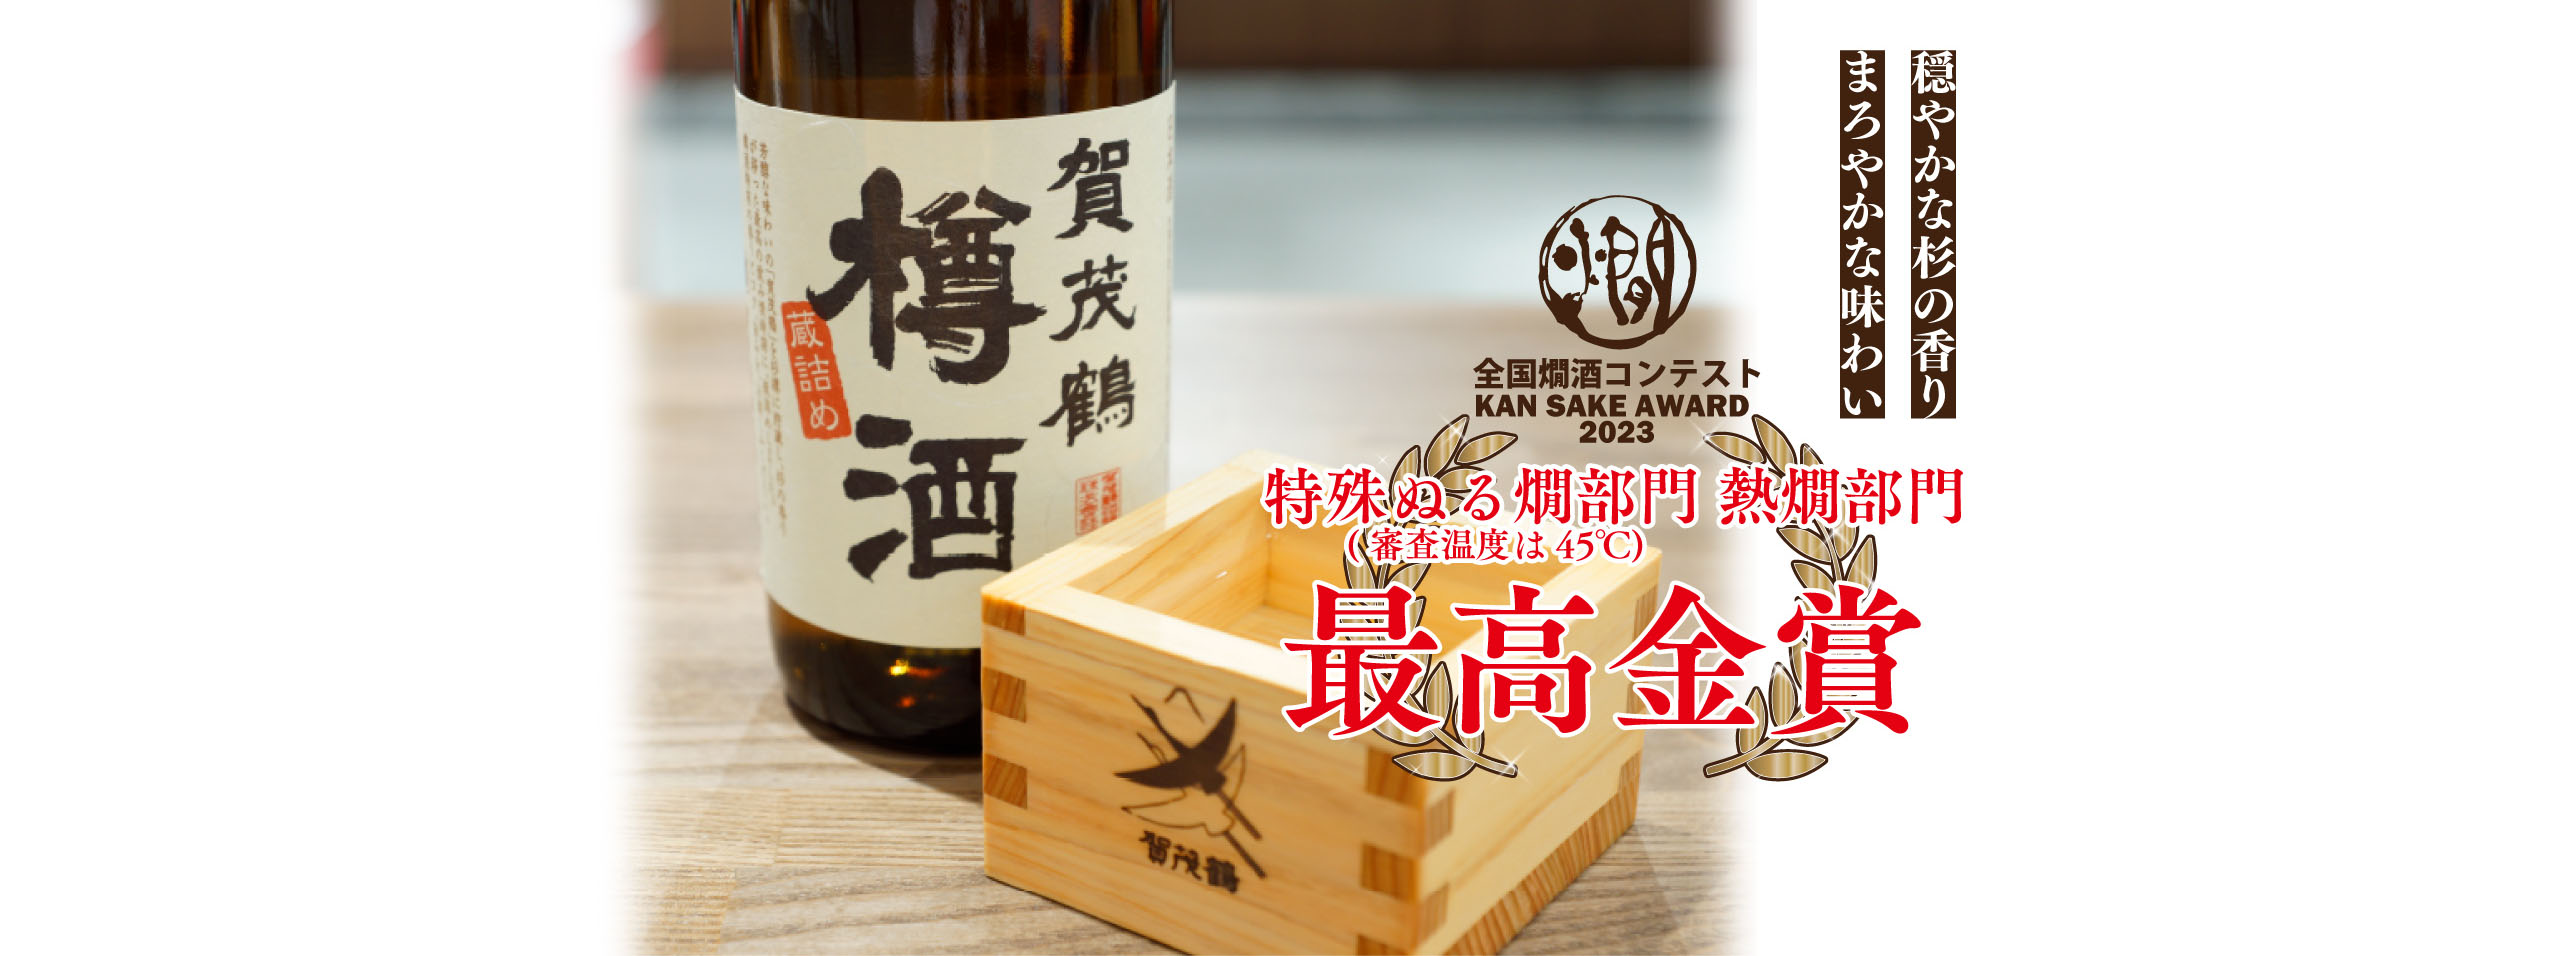 樽酒「全国熱燗コンテスト2023」最高金賞 受賞